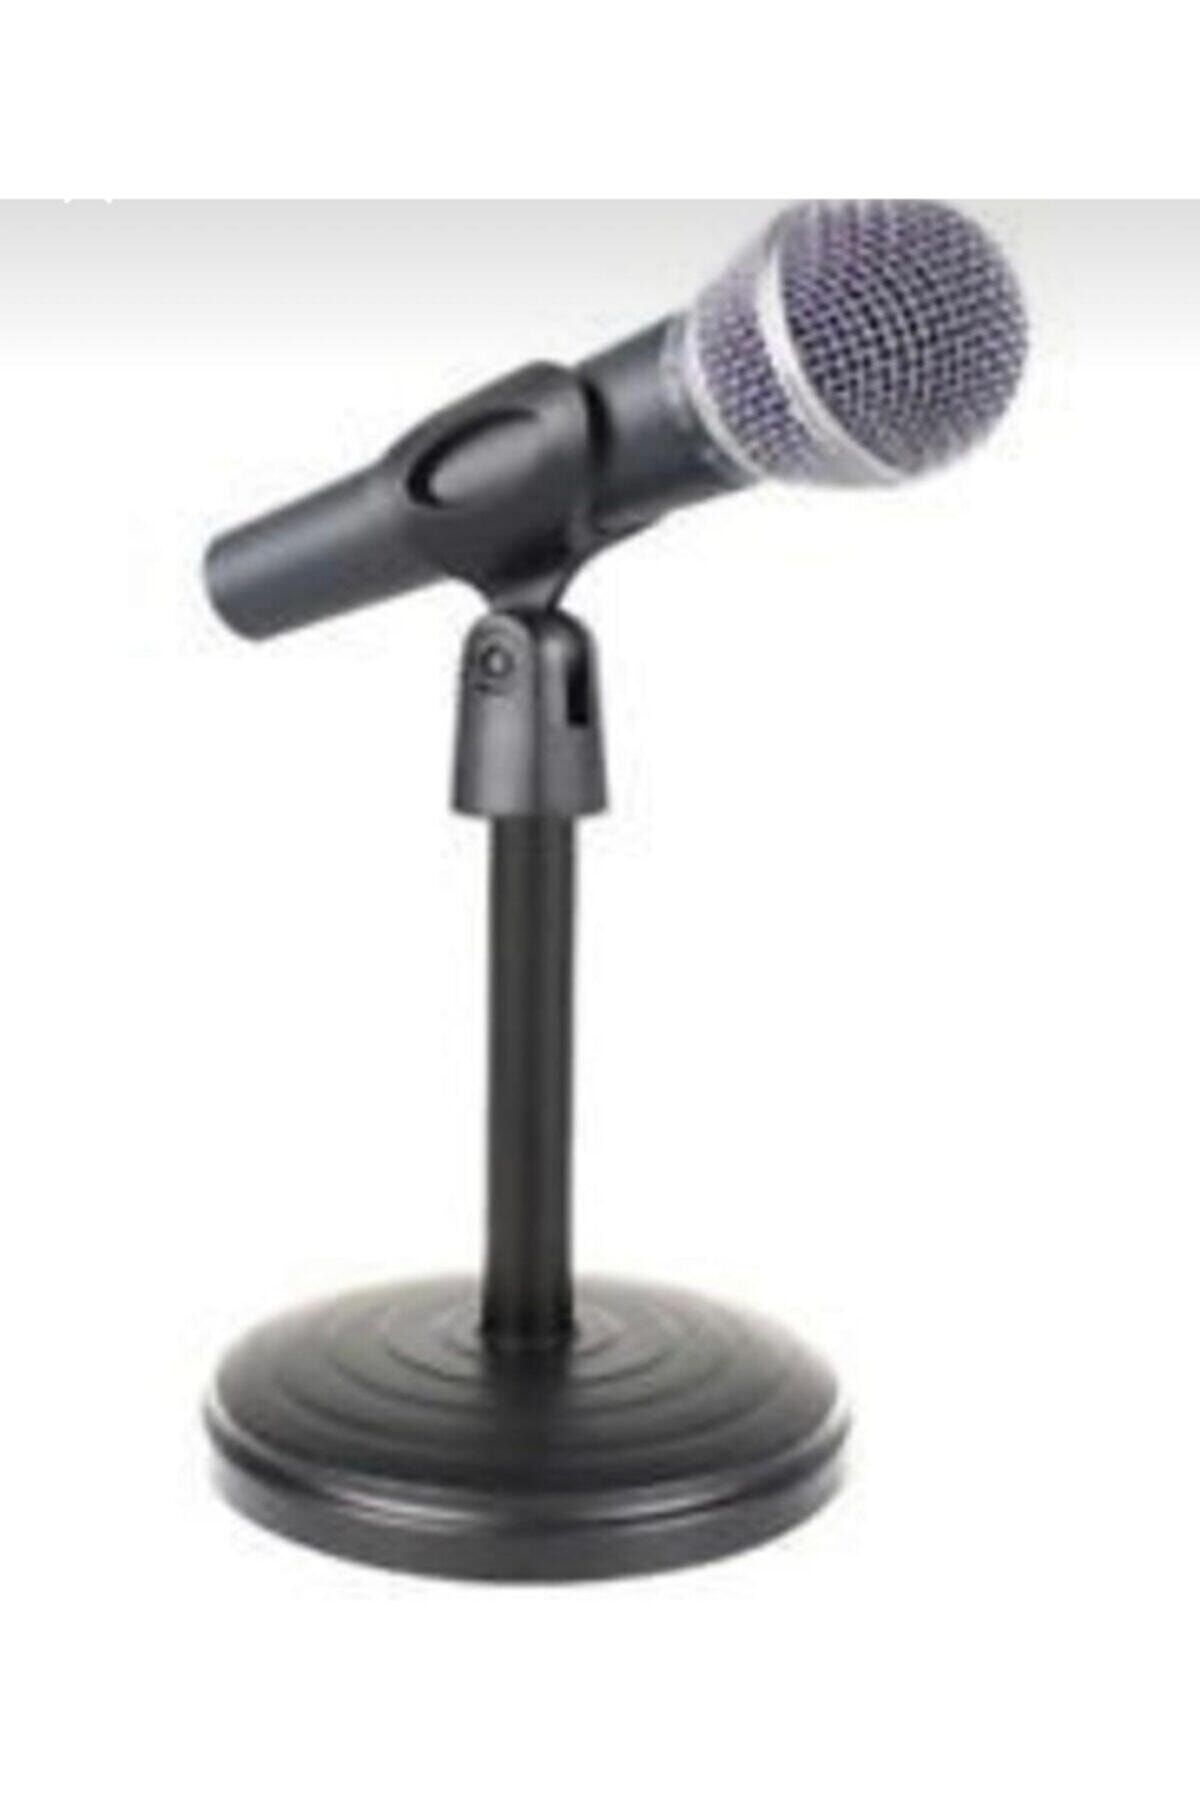 SRSTECH Masaüstü Mikrofon Tutucu Ayaklı Mikrofon Standı